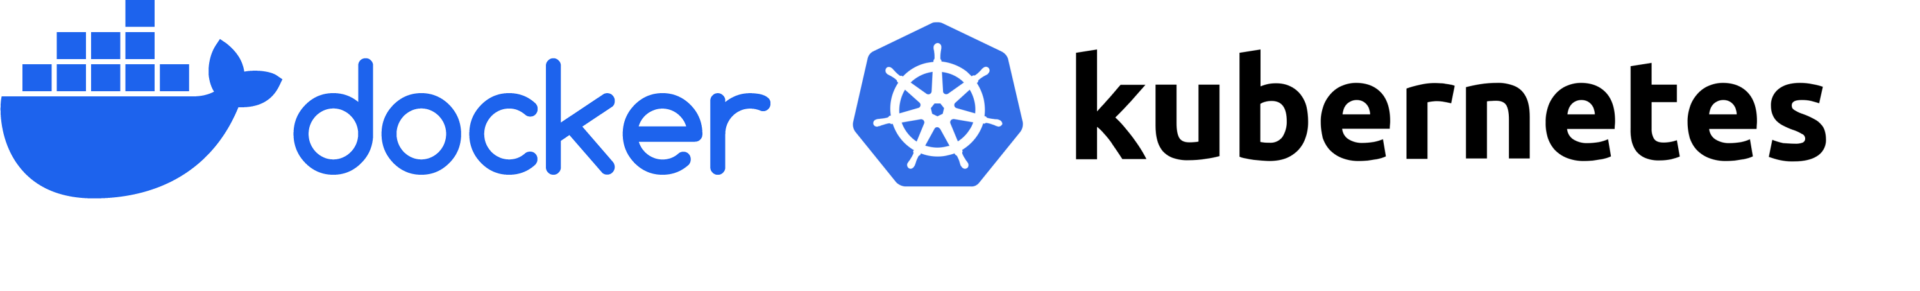 Docker + Kubernetes Logos